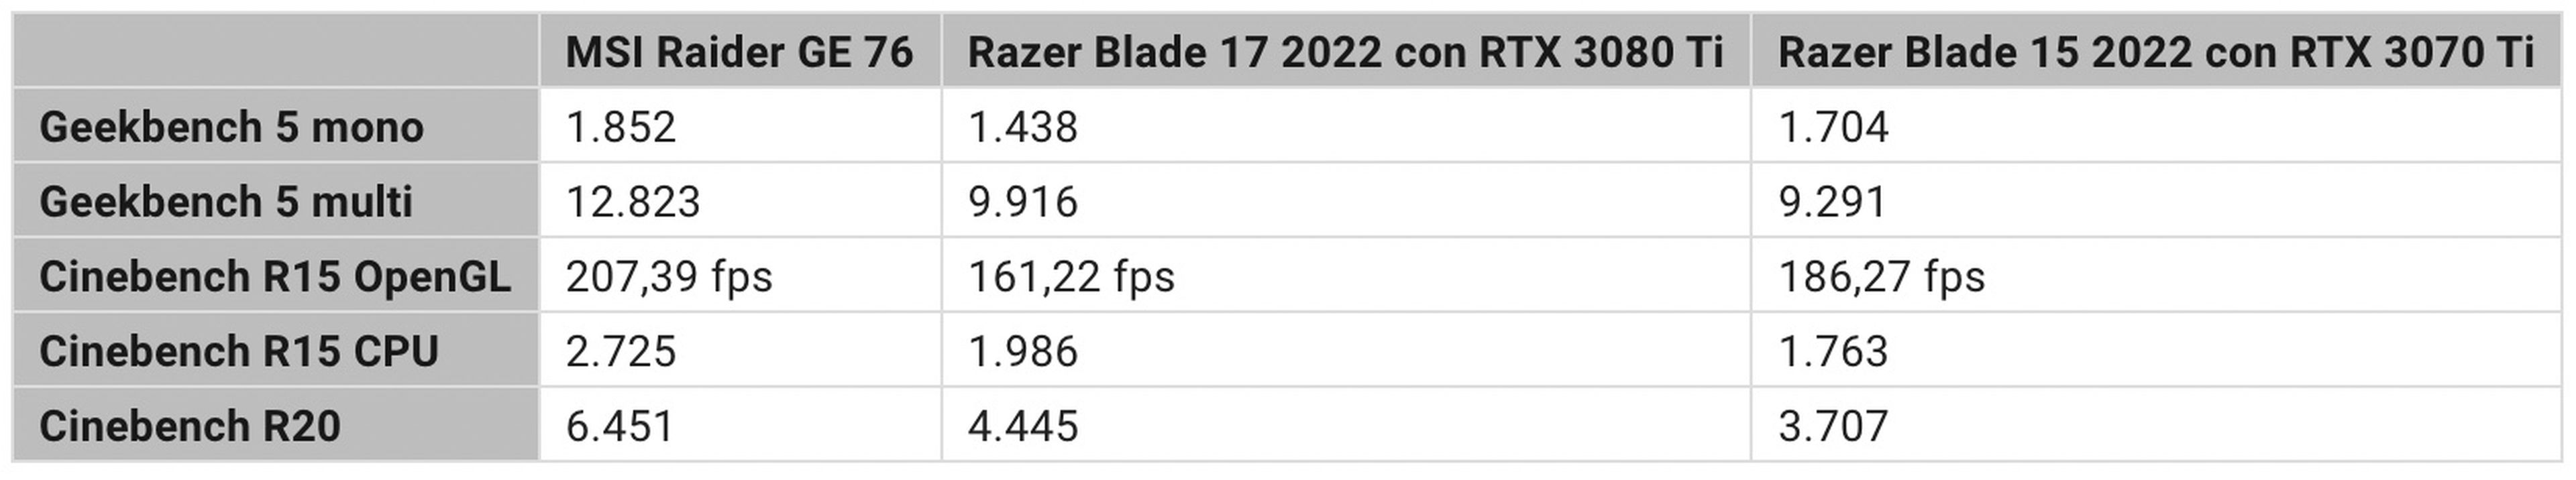 tabla rendimiento msi raider ge76